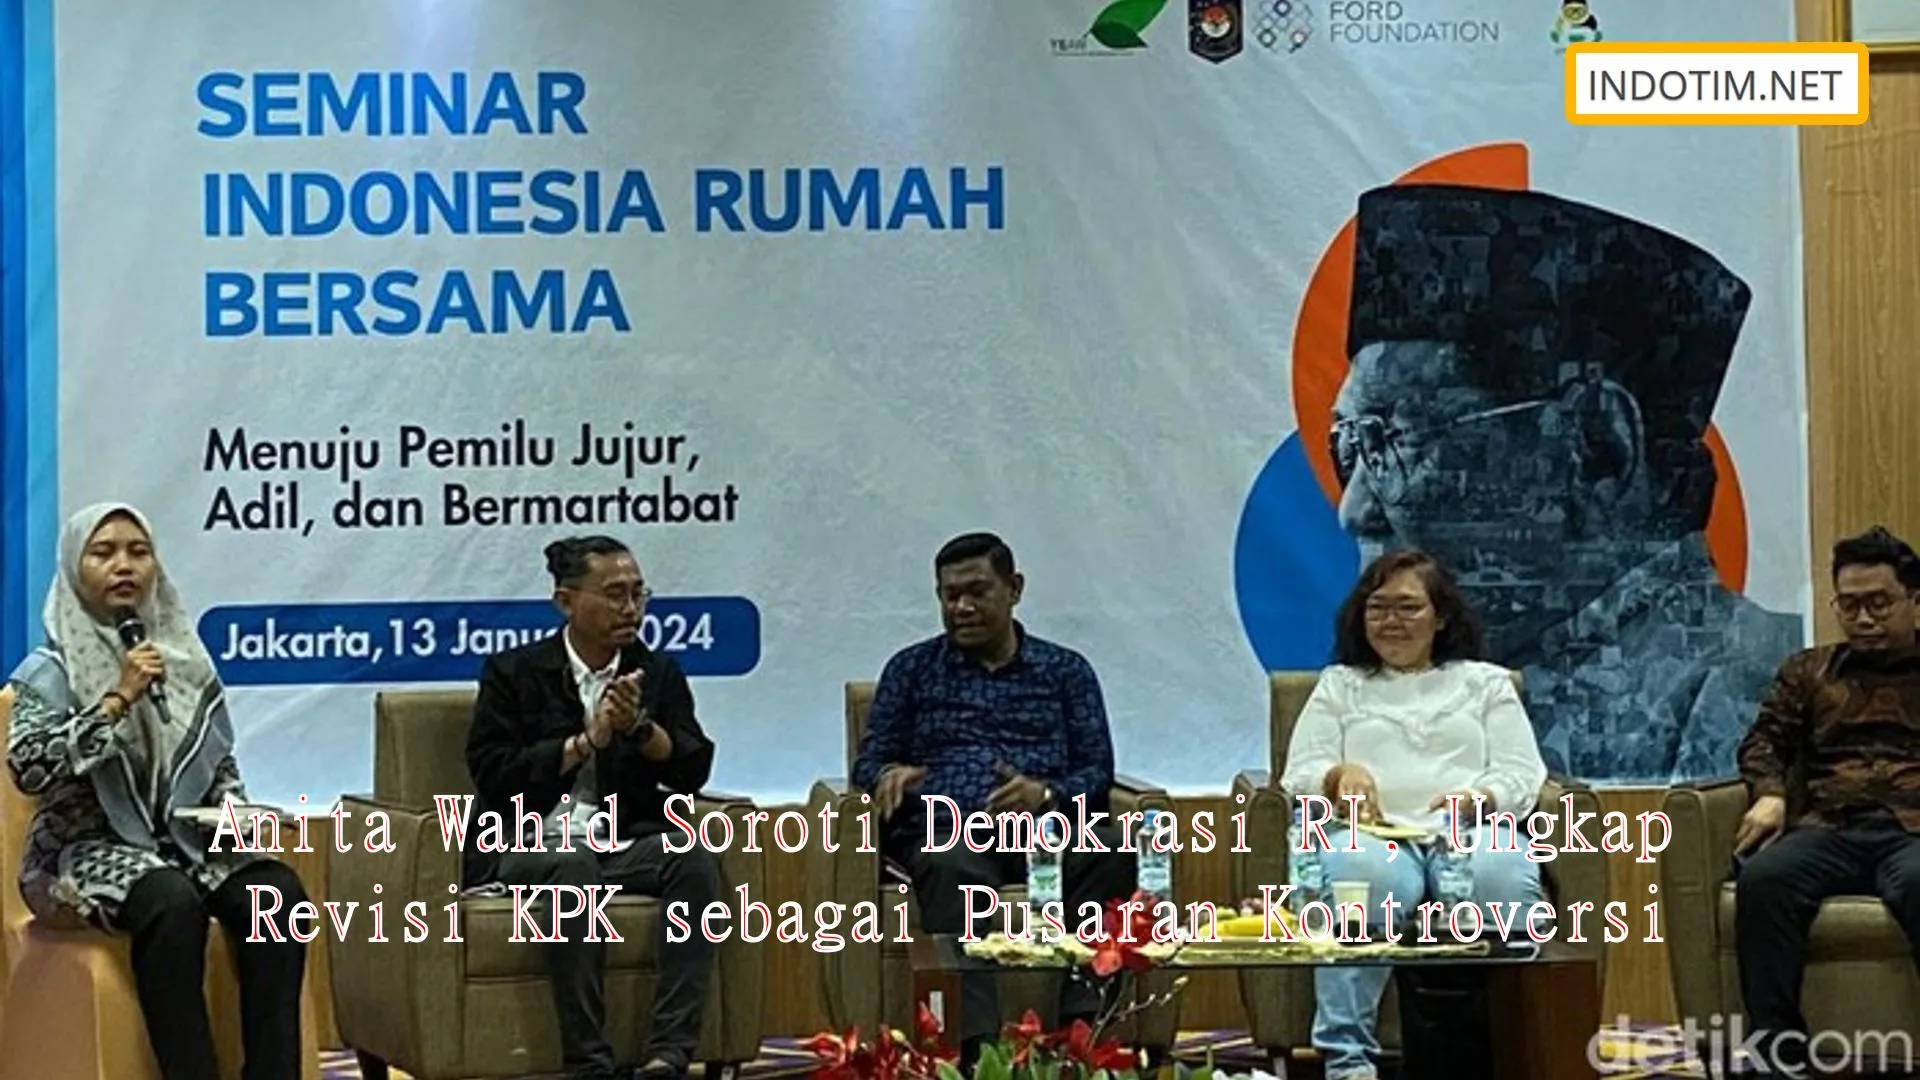 Anita Wahid Soroti Demokrasi RI, Ungkap Revisi KPK sebagai Pusaran Kontroversi